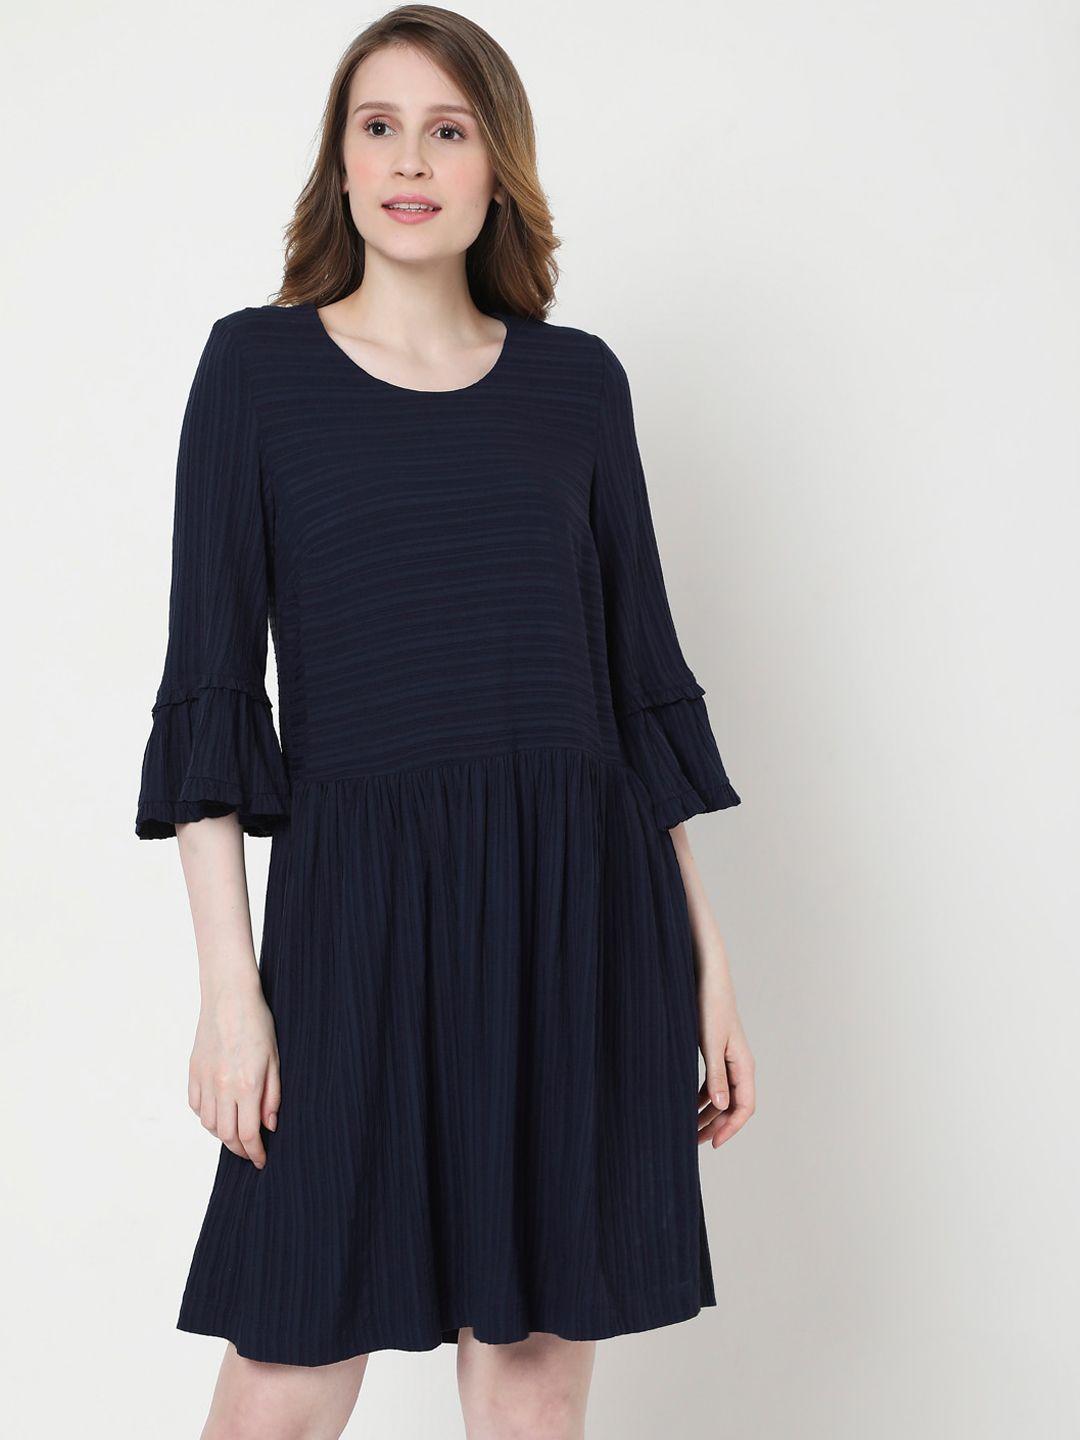 vero-moda-women-navy-blue-&-black-striped-round-neck-drop-waist-dress